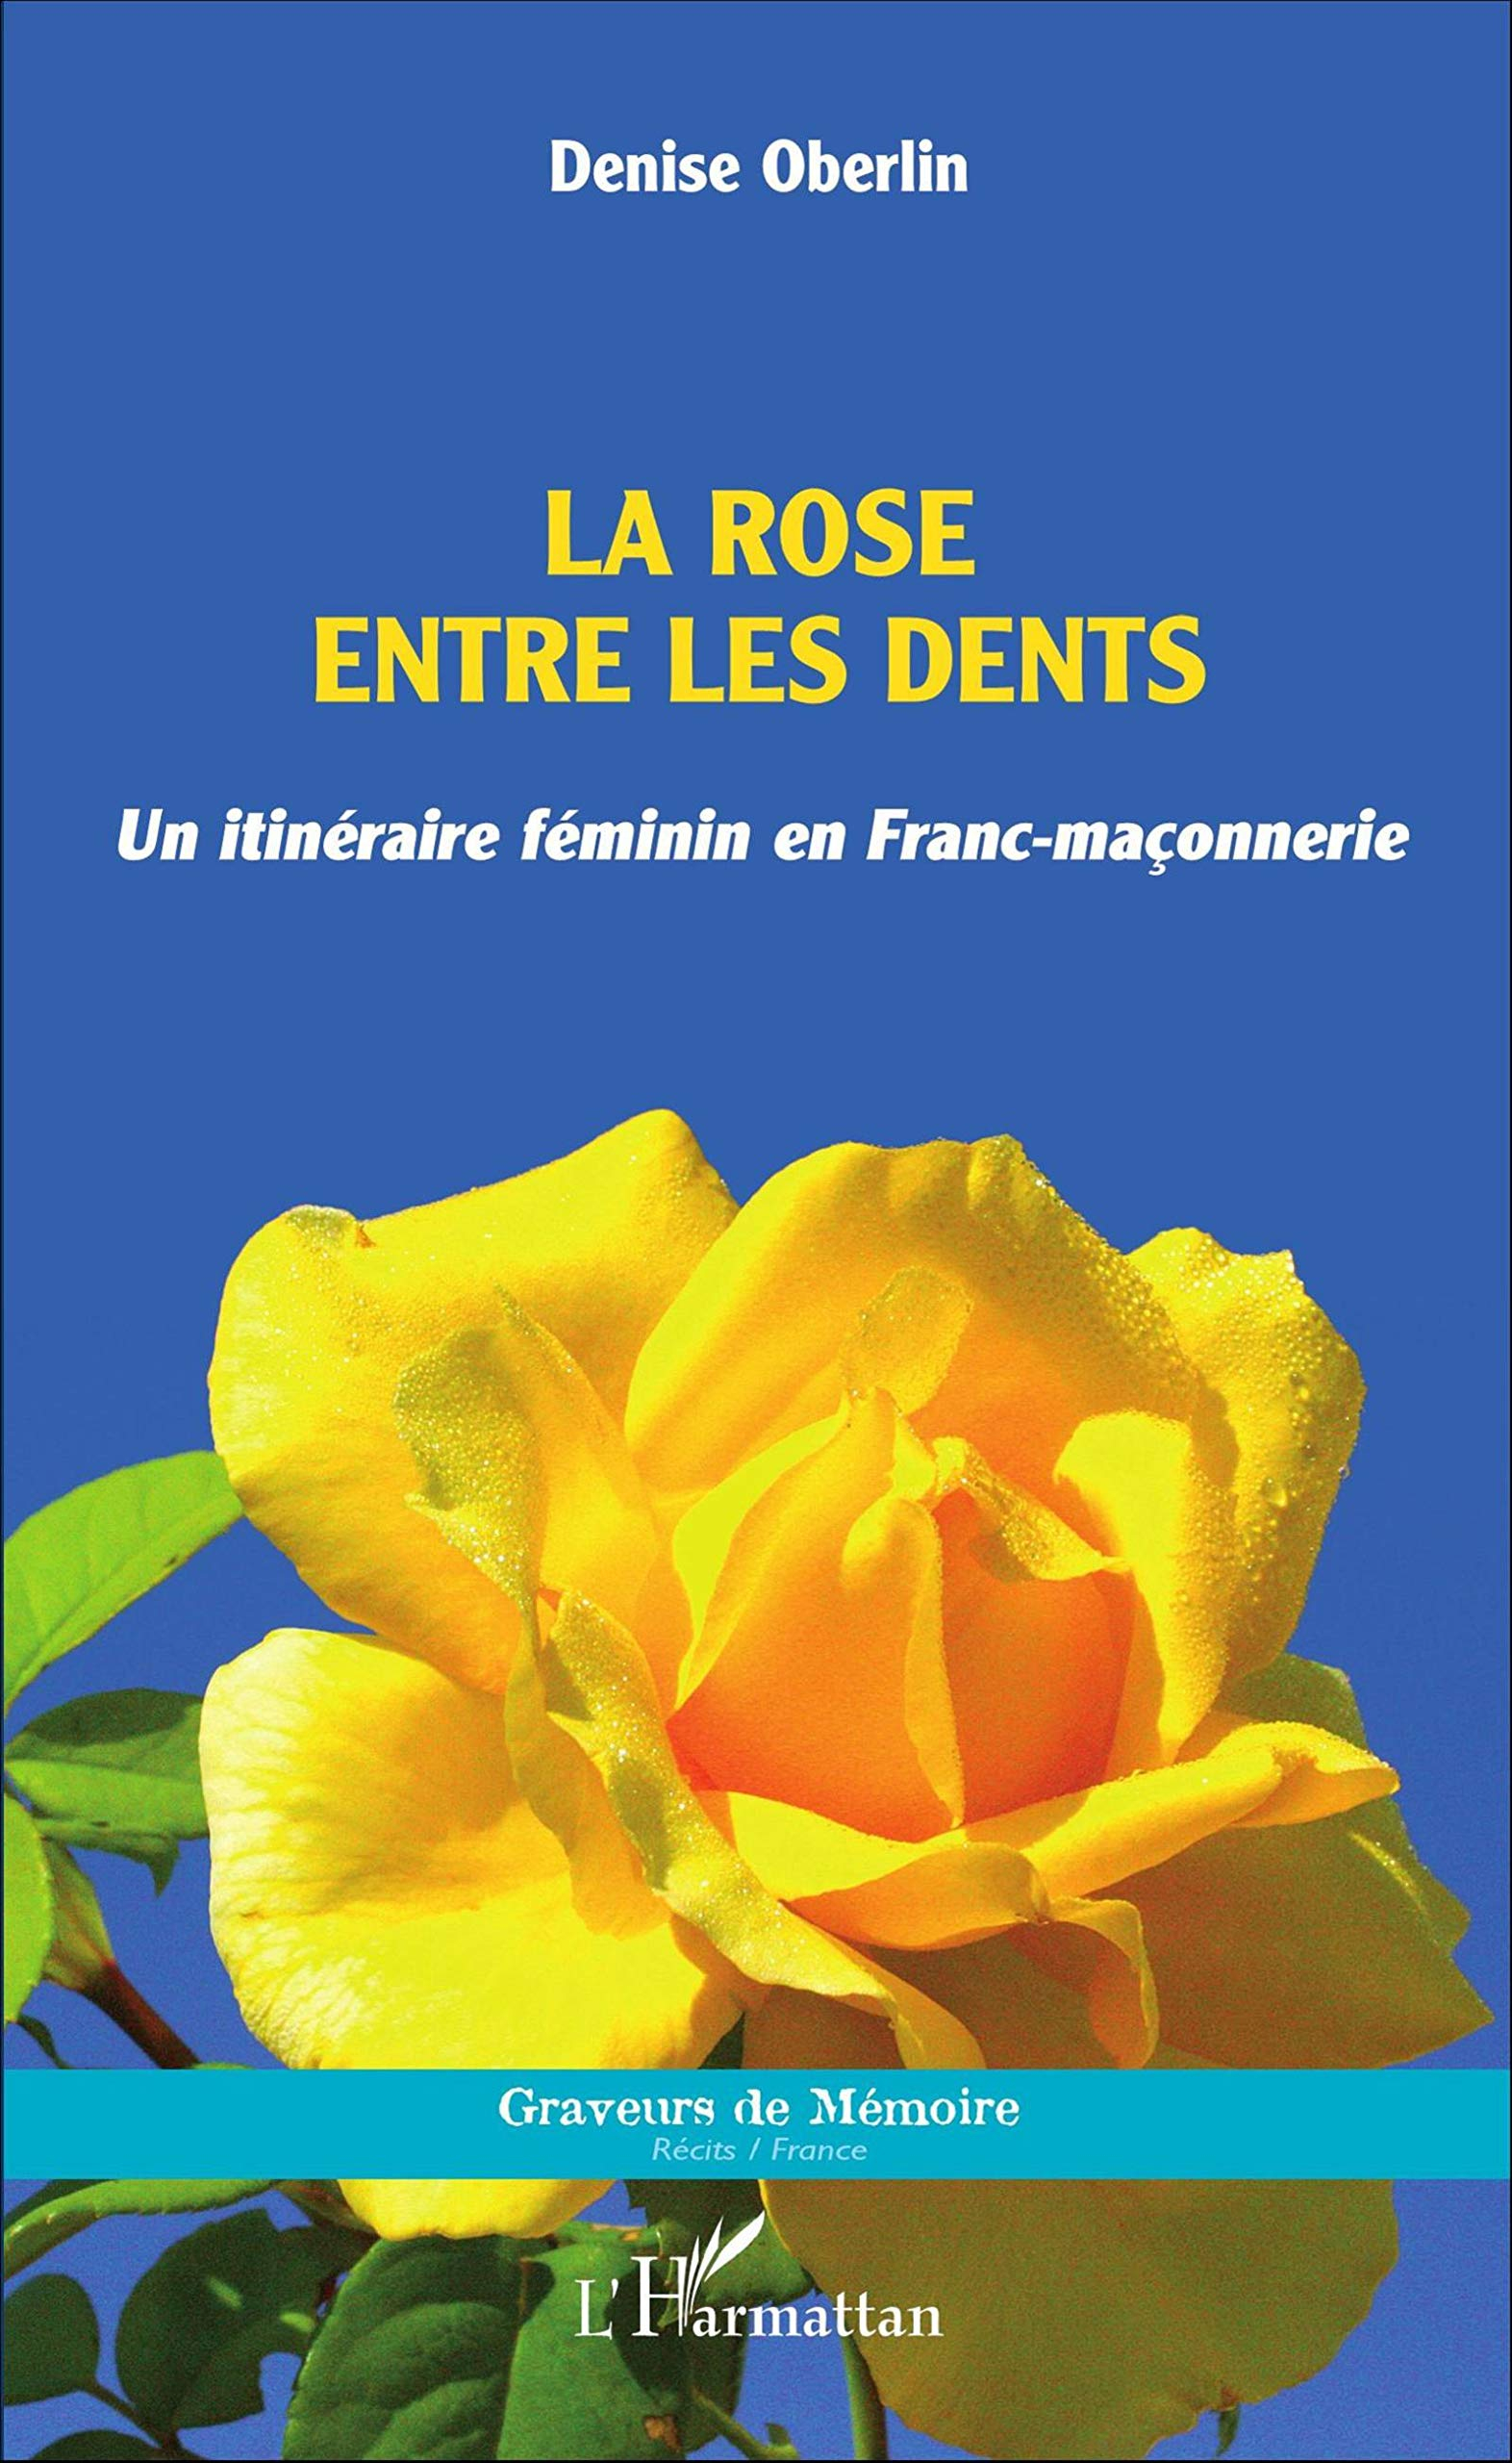 La rose entre les dents : un itinéraire féminin en franc-maçonnerie